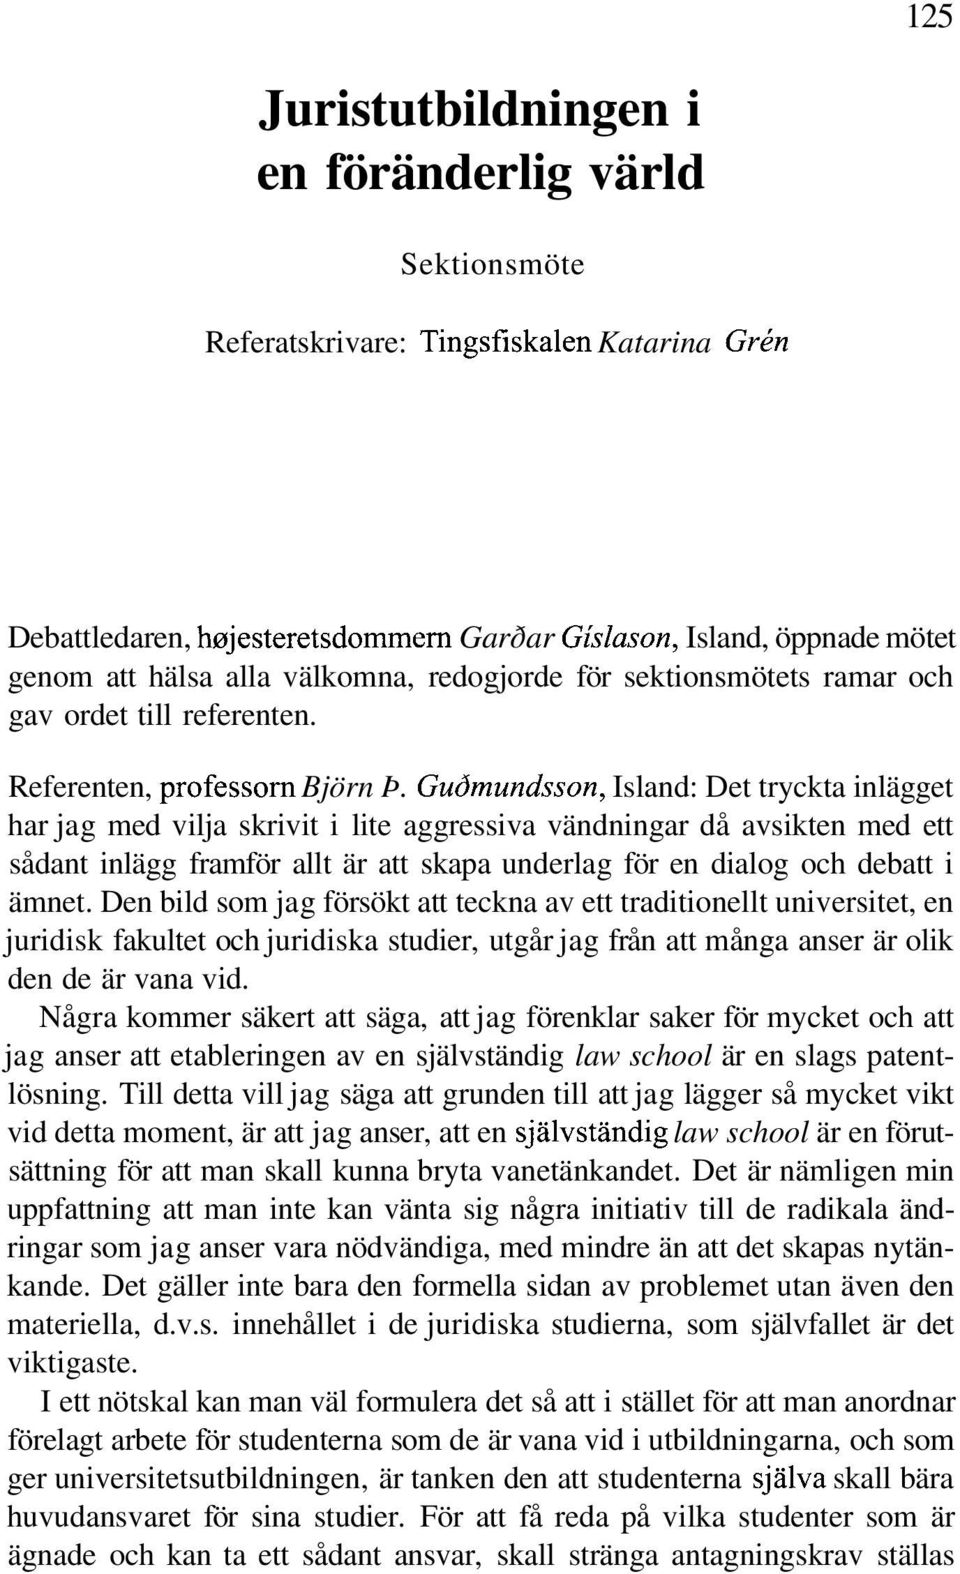 Gudmundsson, Island: Det tryckta inlägget har jag med vilja skrivit i lite aggressiva vändningar då avsikten med ett sådant inlägg framför allt är att skapa underlag för en dialog och debatt i ämnet.